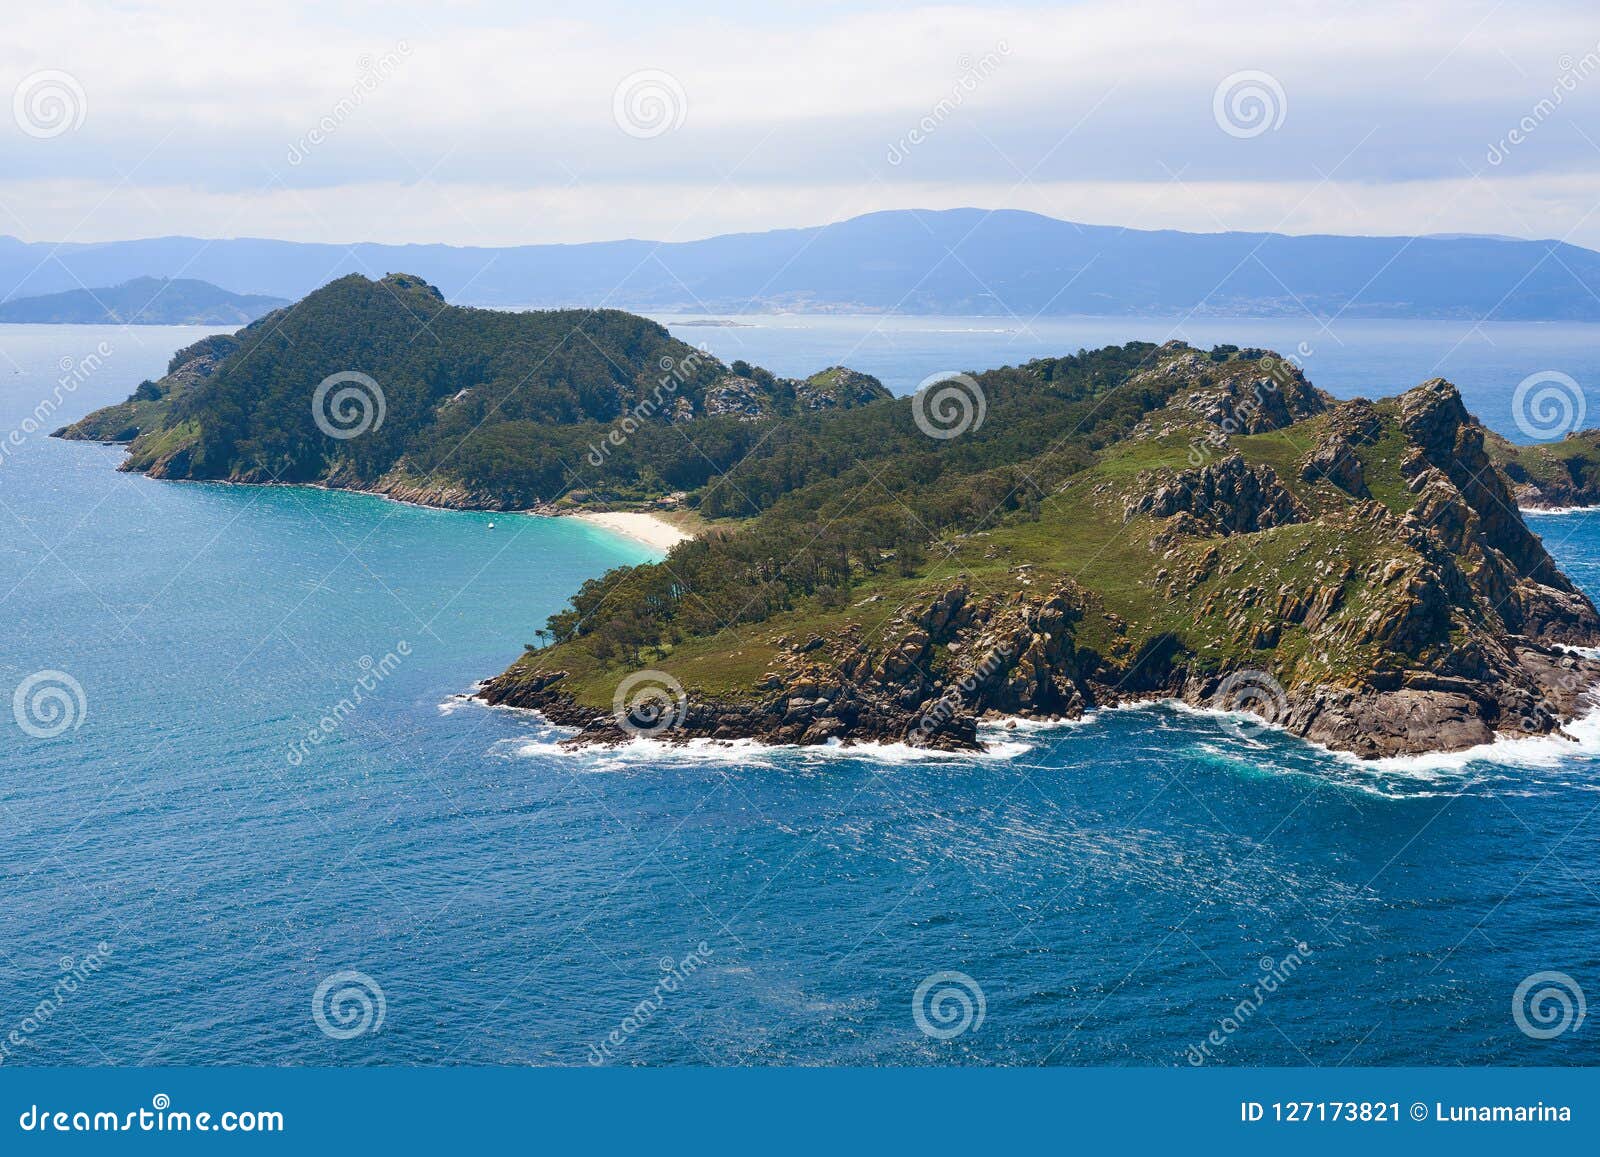 islas cies islands san martino island in vigo galicia